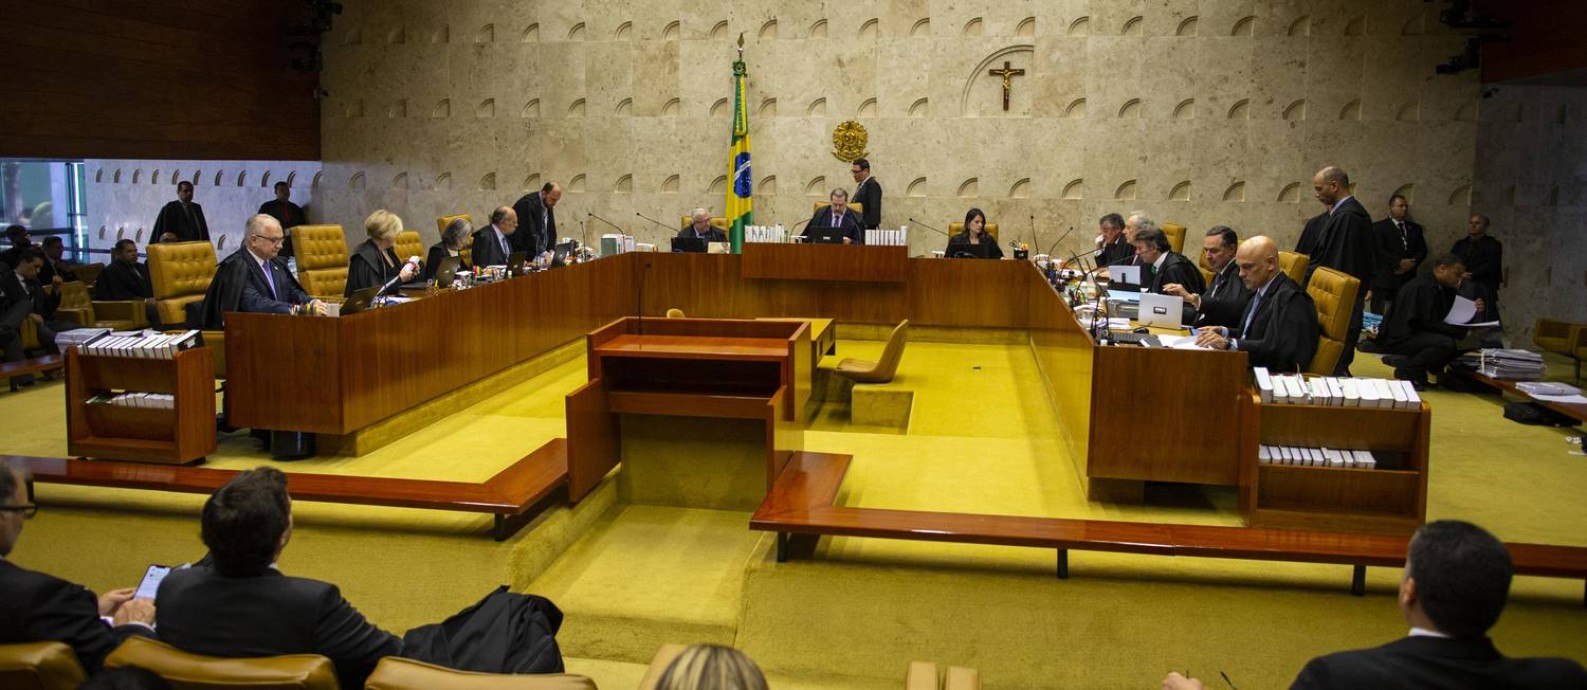 O plenário do Supremo Tribunal Federal 02/10/2019 Foto: Daniel Marenco / Agência O Globo